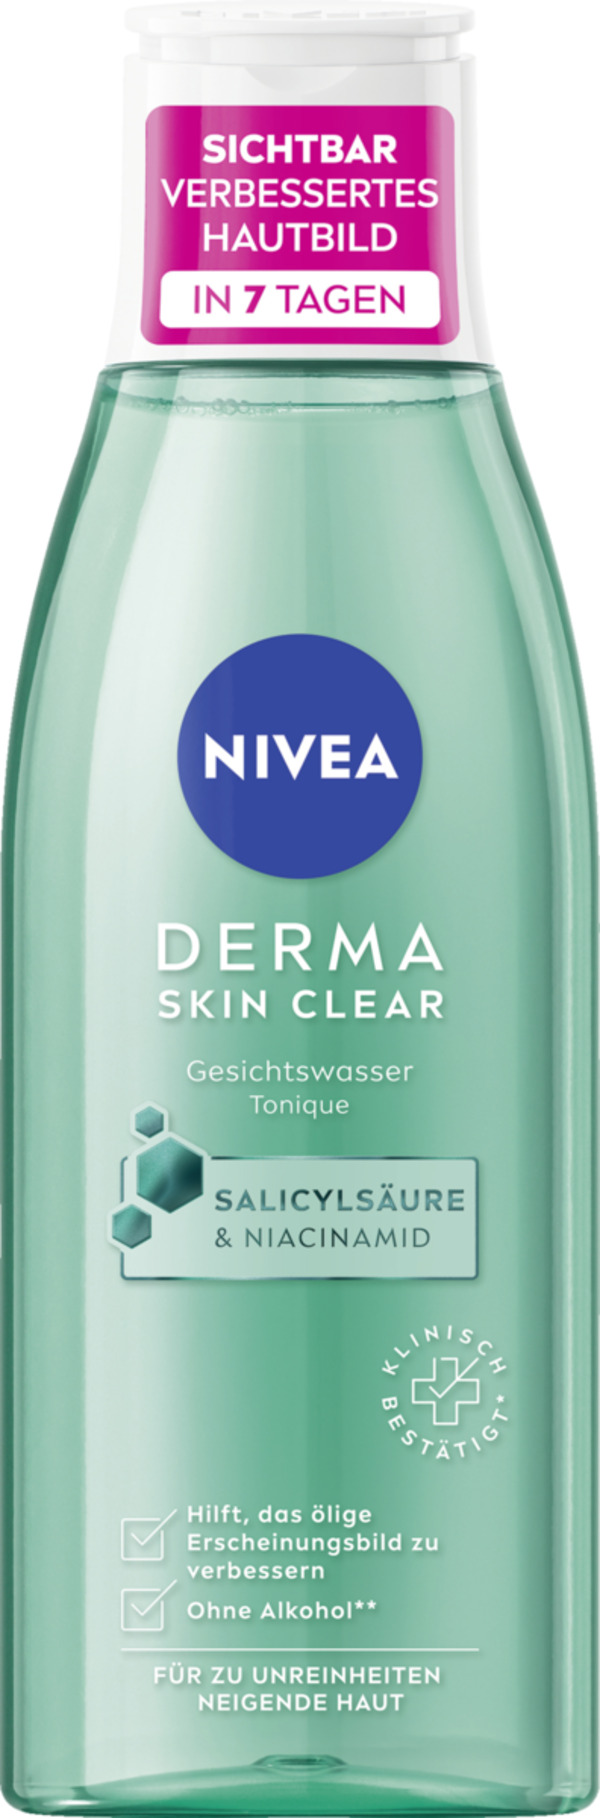 Bild 1 von NIVEA Derma Skin Clear Gesichtswasser